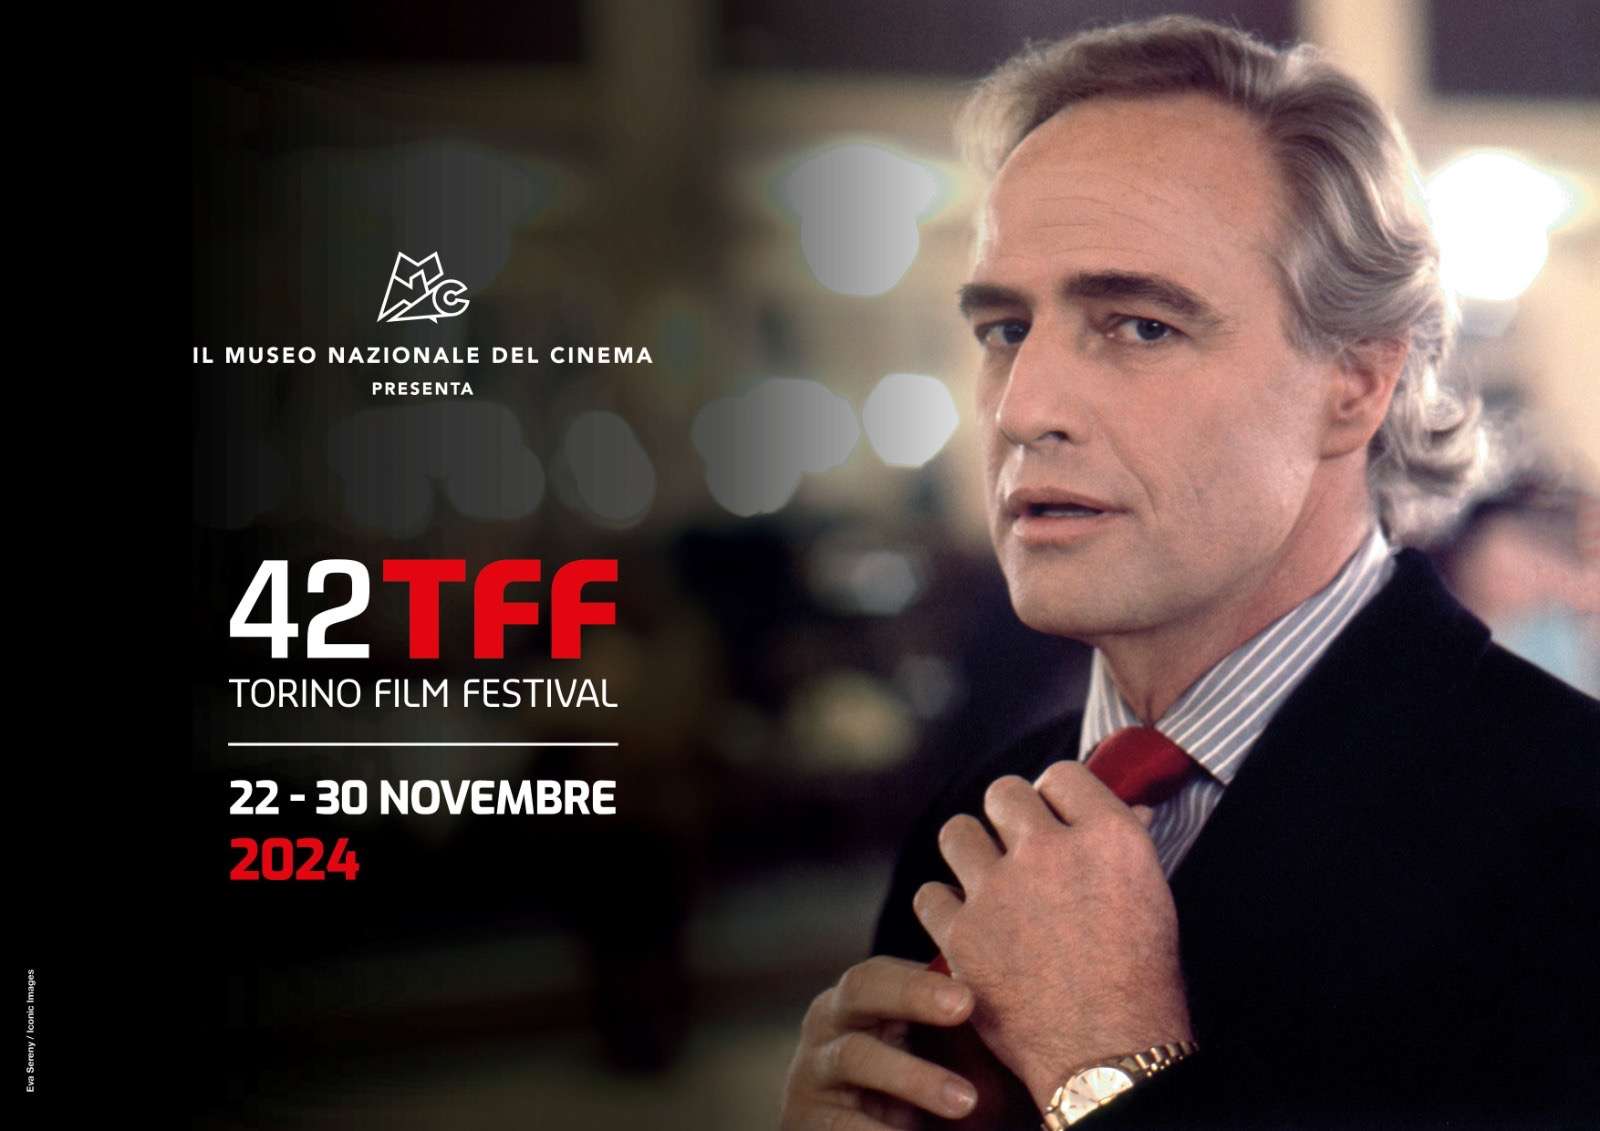 Il volto di Marlon Brando farà da immagine guida al Torino Film Festival